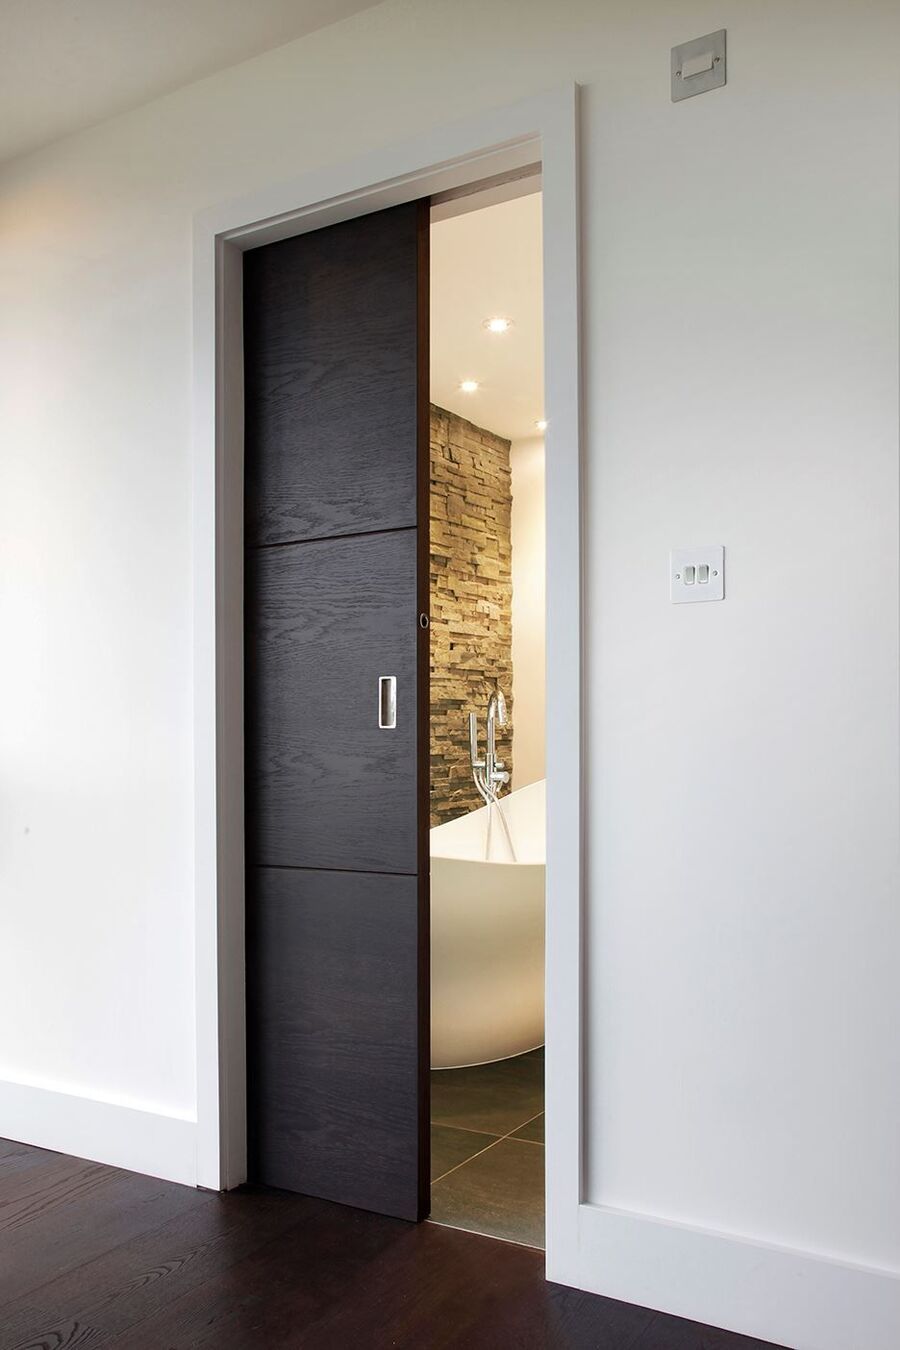 Pasillo de muros blancos y suelo de madera oscura con una puerta corredera de madera negra que da hacia un baño.